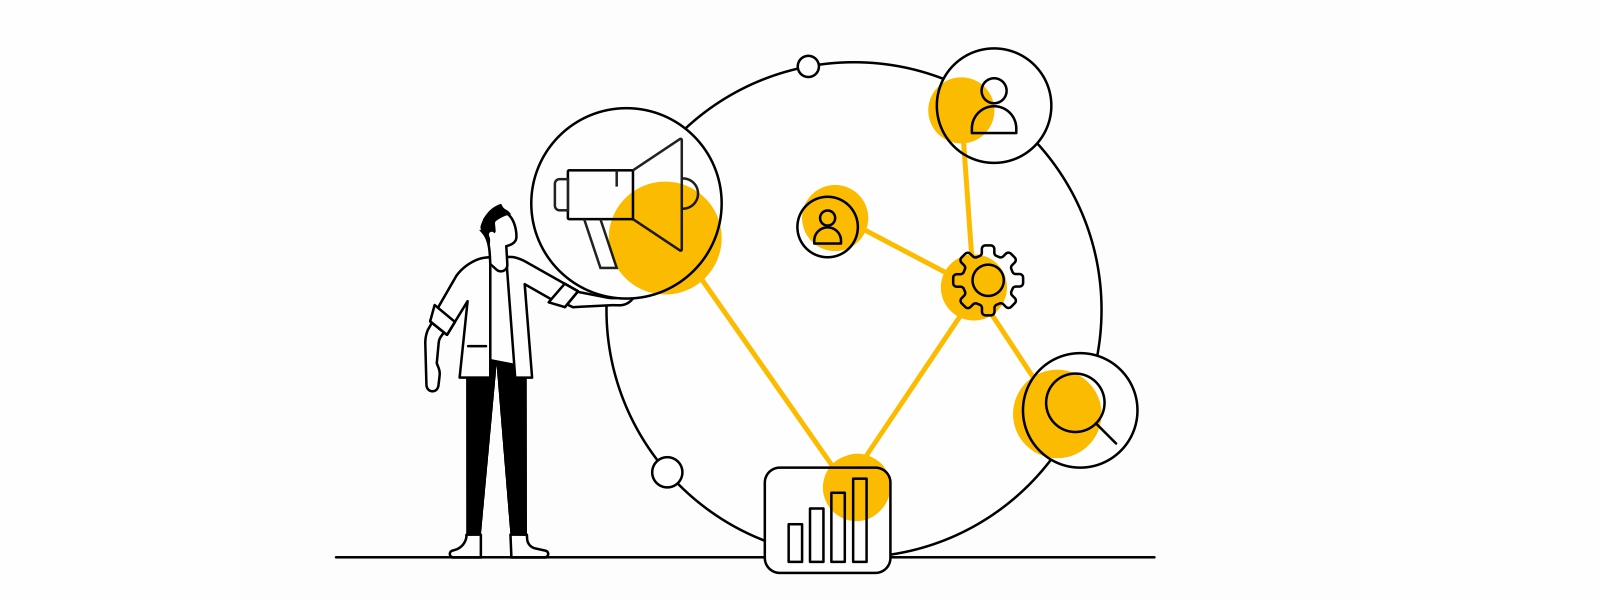 Un hombre sostiene con su mano izquierda un círculo con varios íconos: un megáfono, un engranaje, un gráfico de barras, una lupa, una persona. Sobre ellos, unos puntos amarillos se conectan.